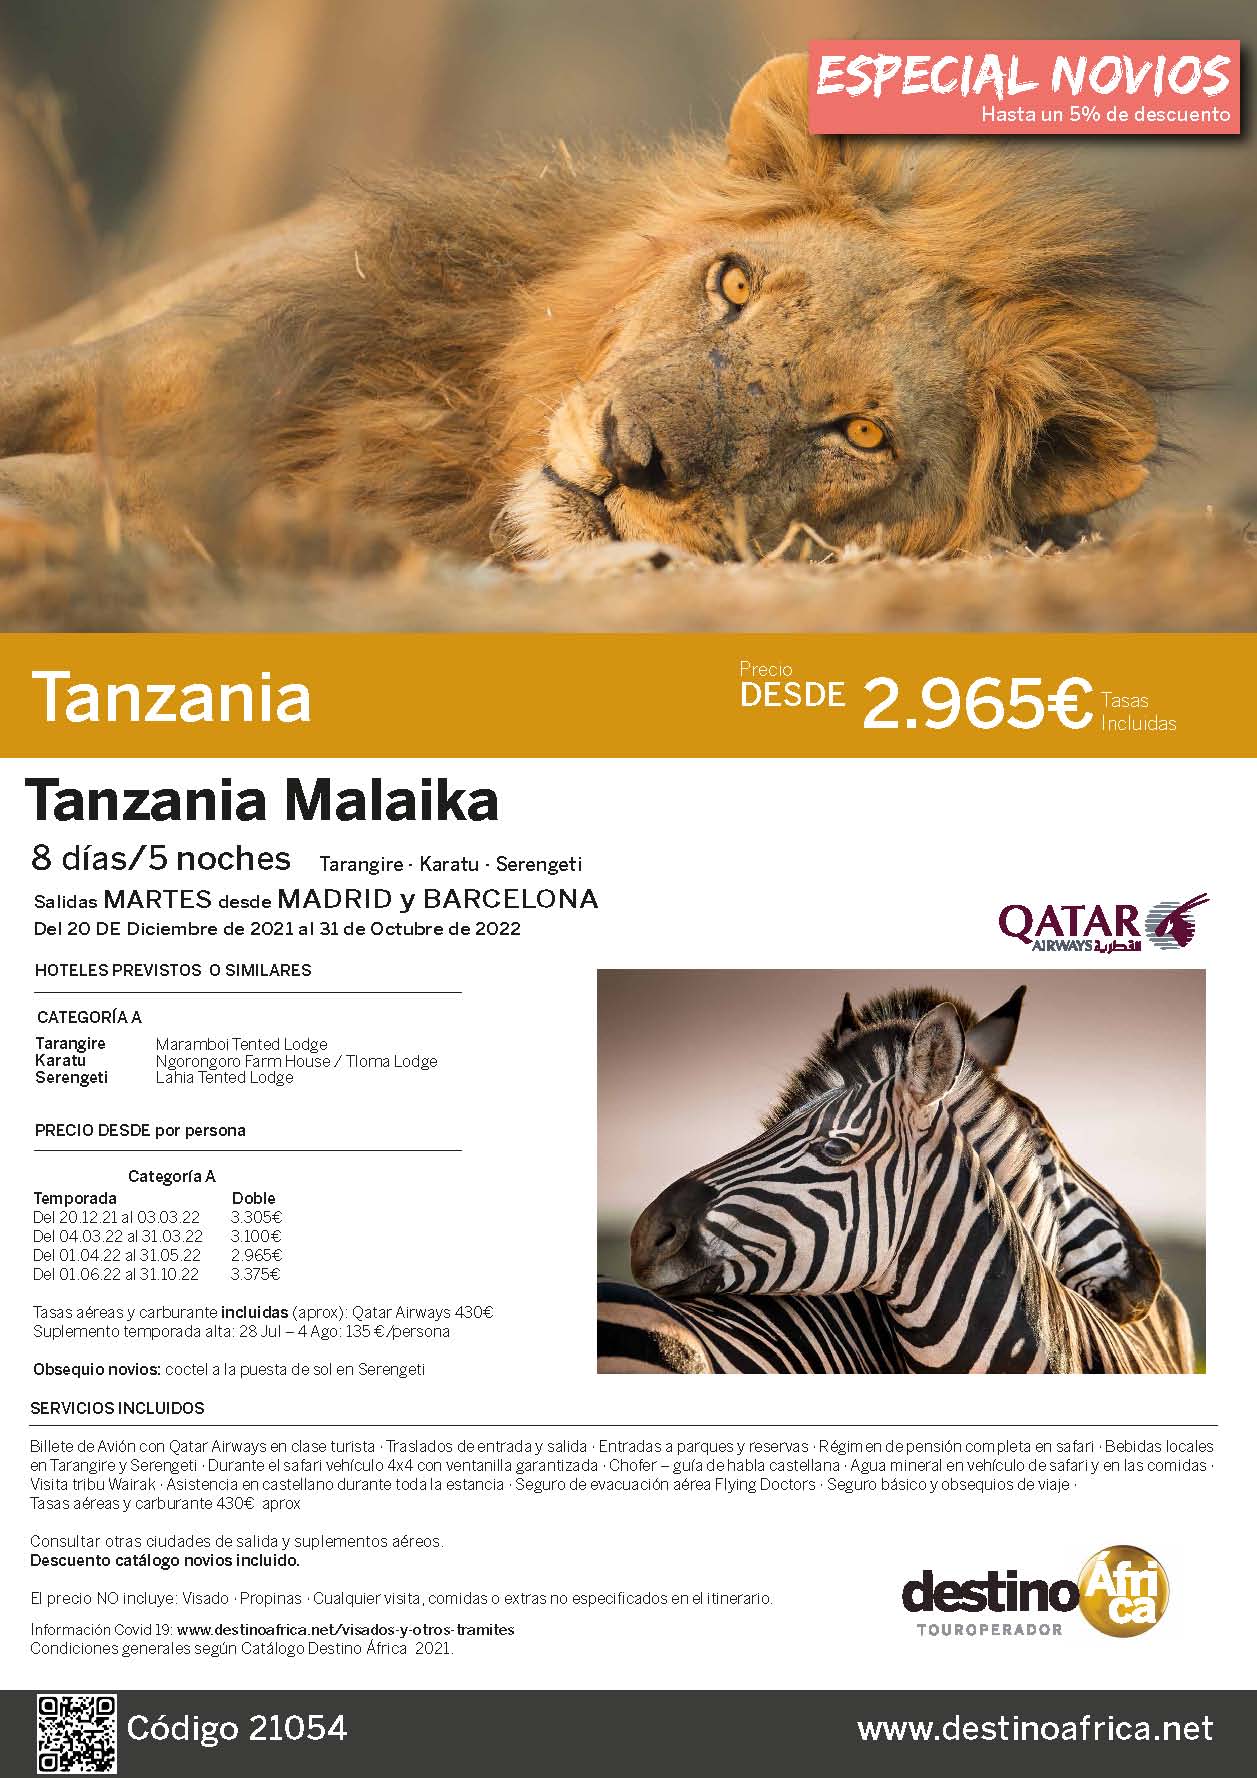 Oferta Destino Africa Tanzania Malaika Diciembre 2021 a Octubre 2022 Qatar Airways salidas desde Barcelona y Madrid